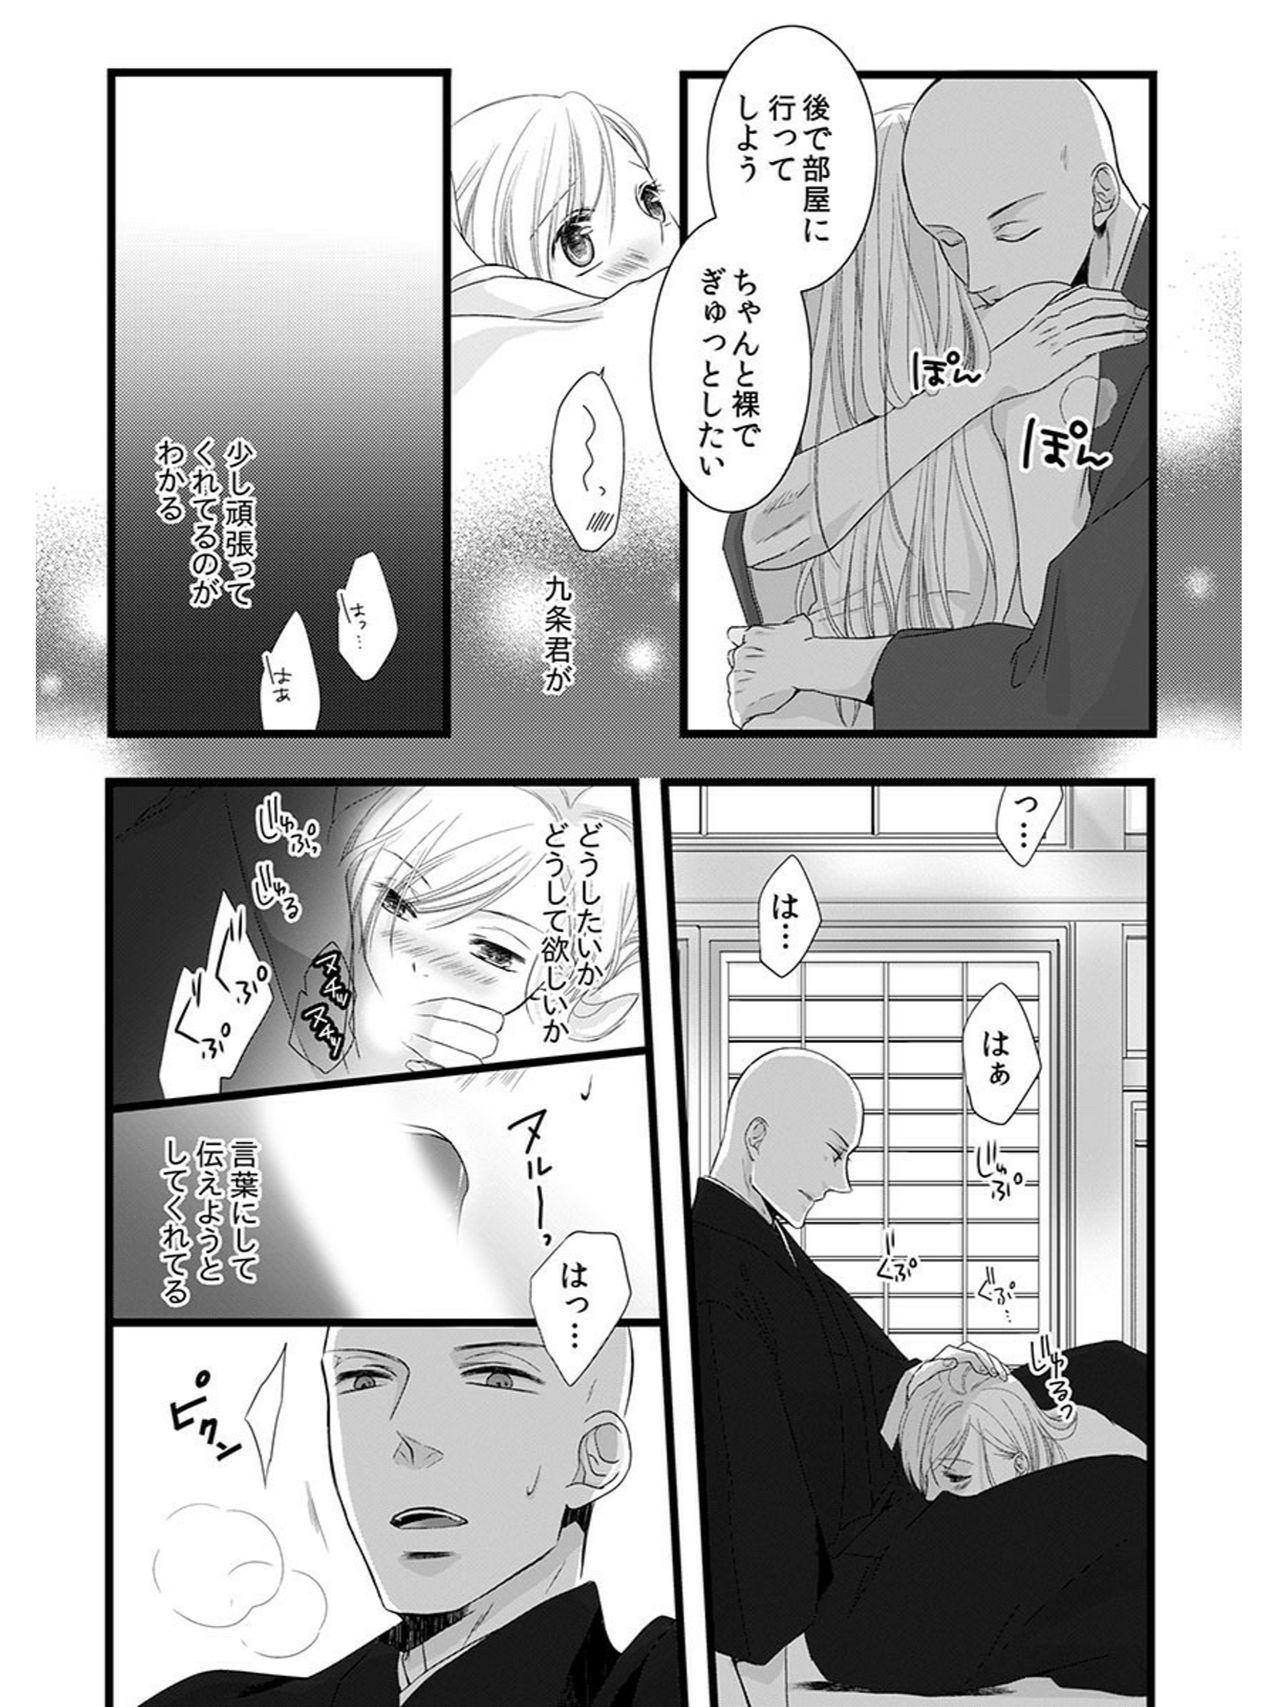 Pee Souryo to Majiwaru Shikiyoku no Yoru ni... 5 Picked Up - Page 5